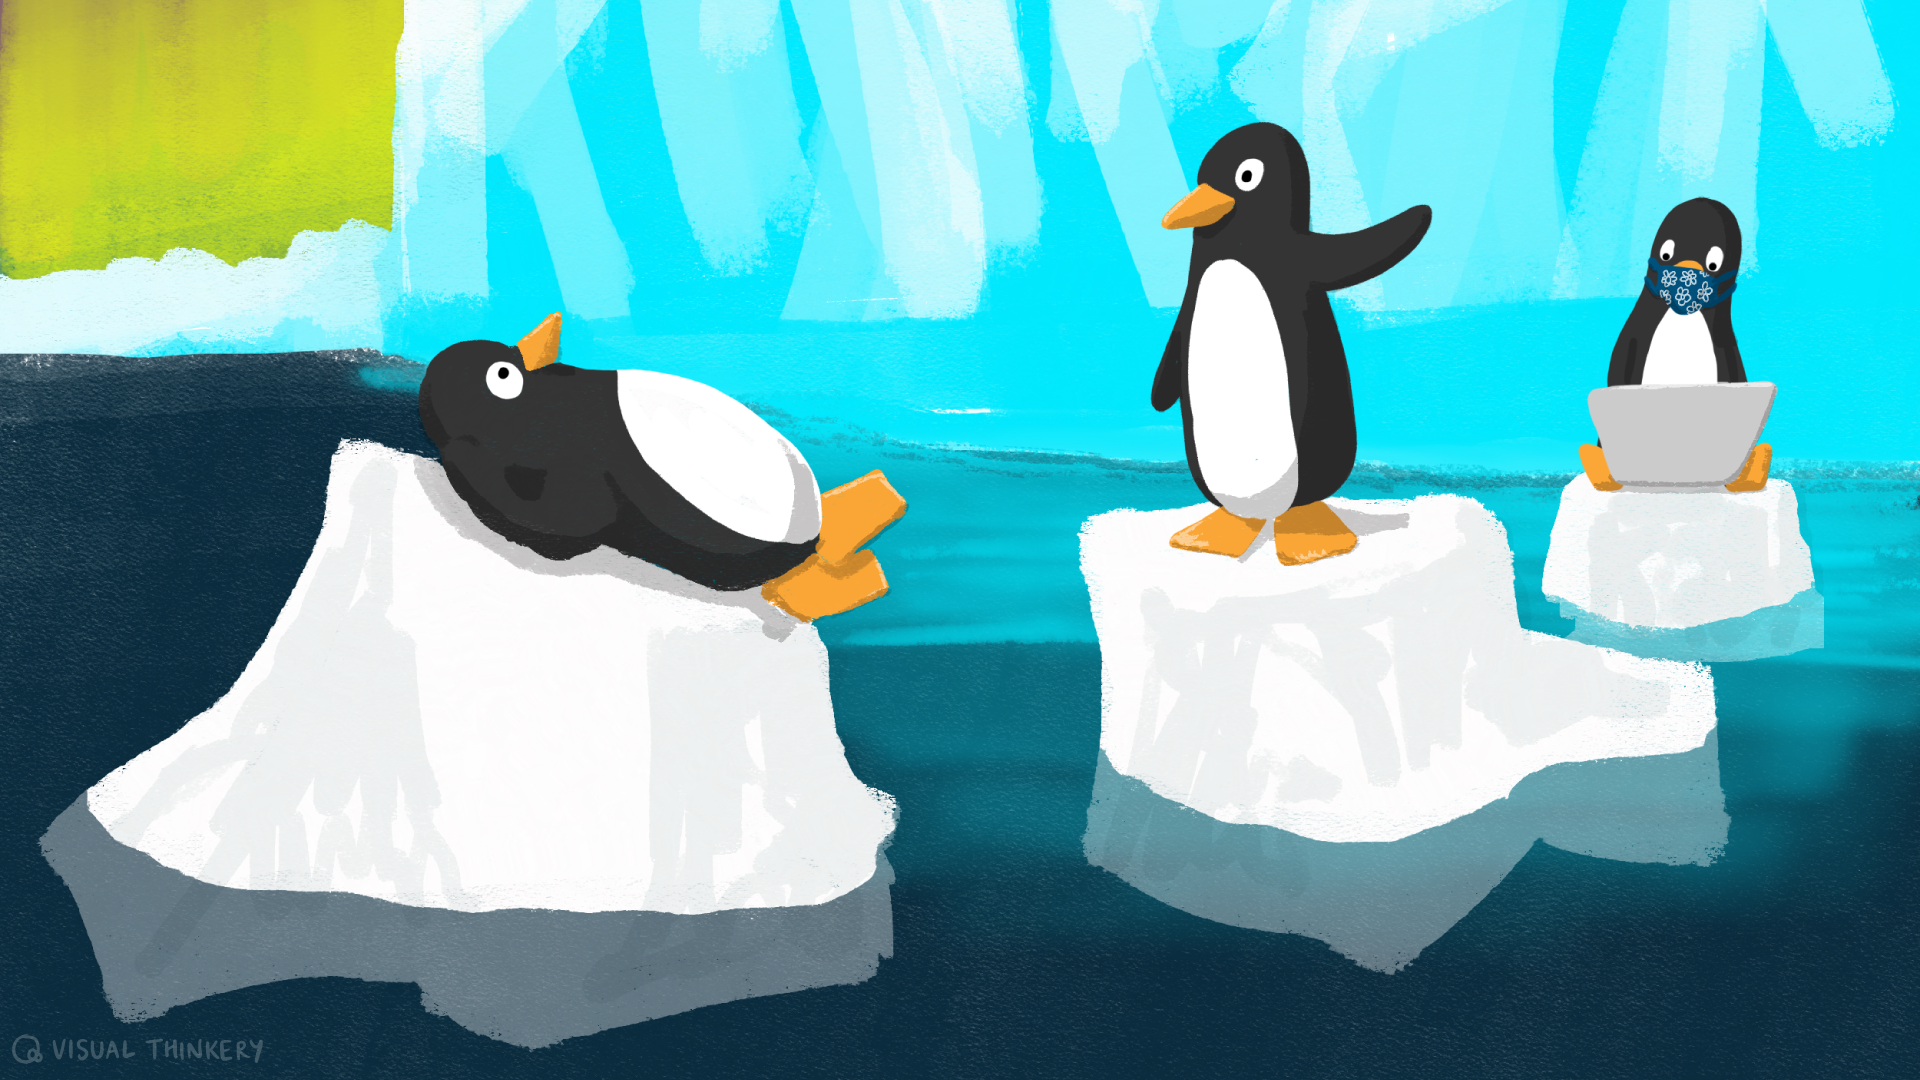 3 penguins floating